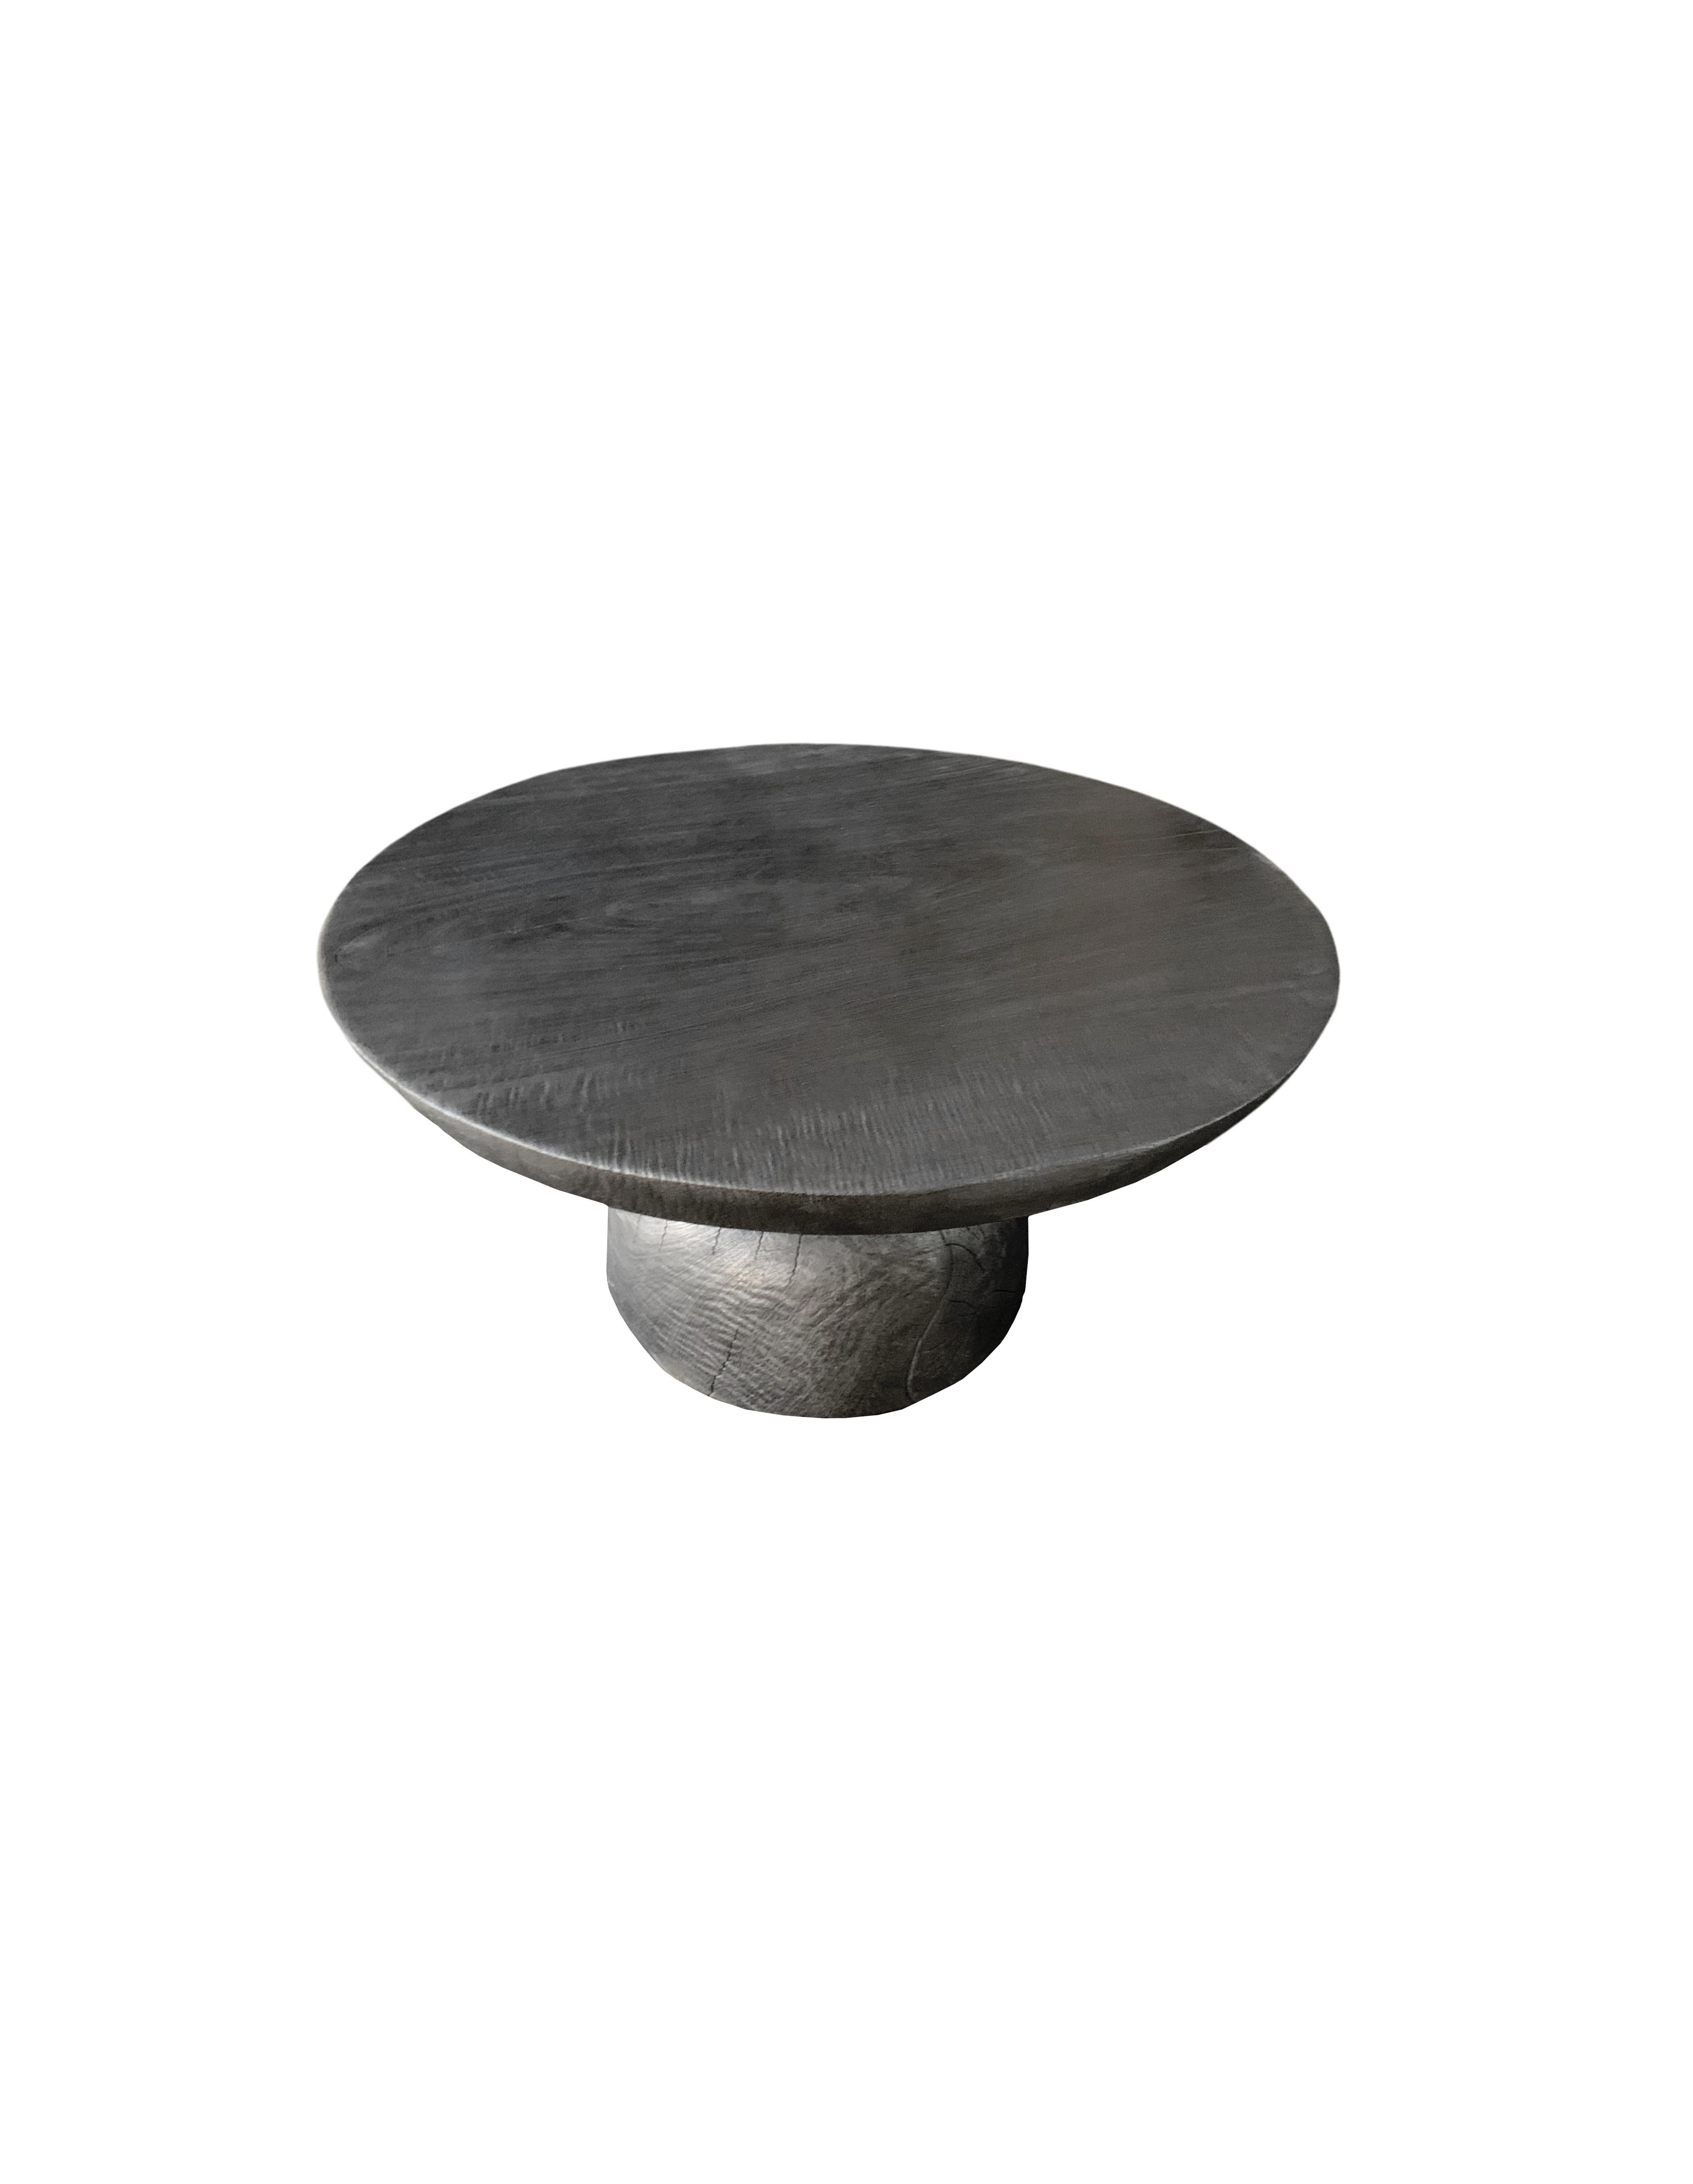 Une table d'appoint ronde merveilleusement sculpturale avec une finition brûlée. Son pigment neutre et sa texture bois en font un produit parfait pour tout espace. Elle présente une base effilée et un grand plateau rond. Une pièce unique,